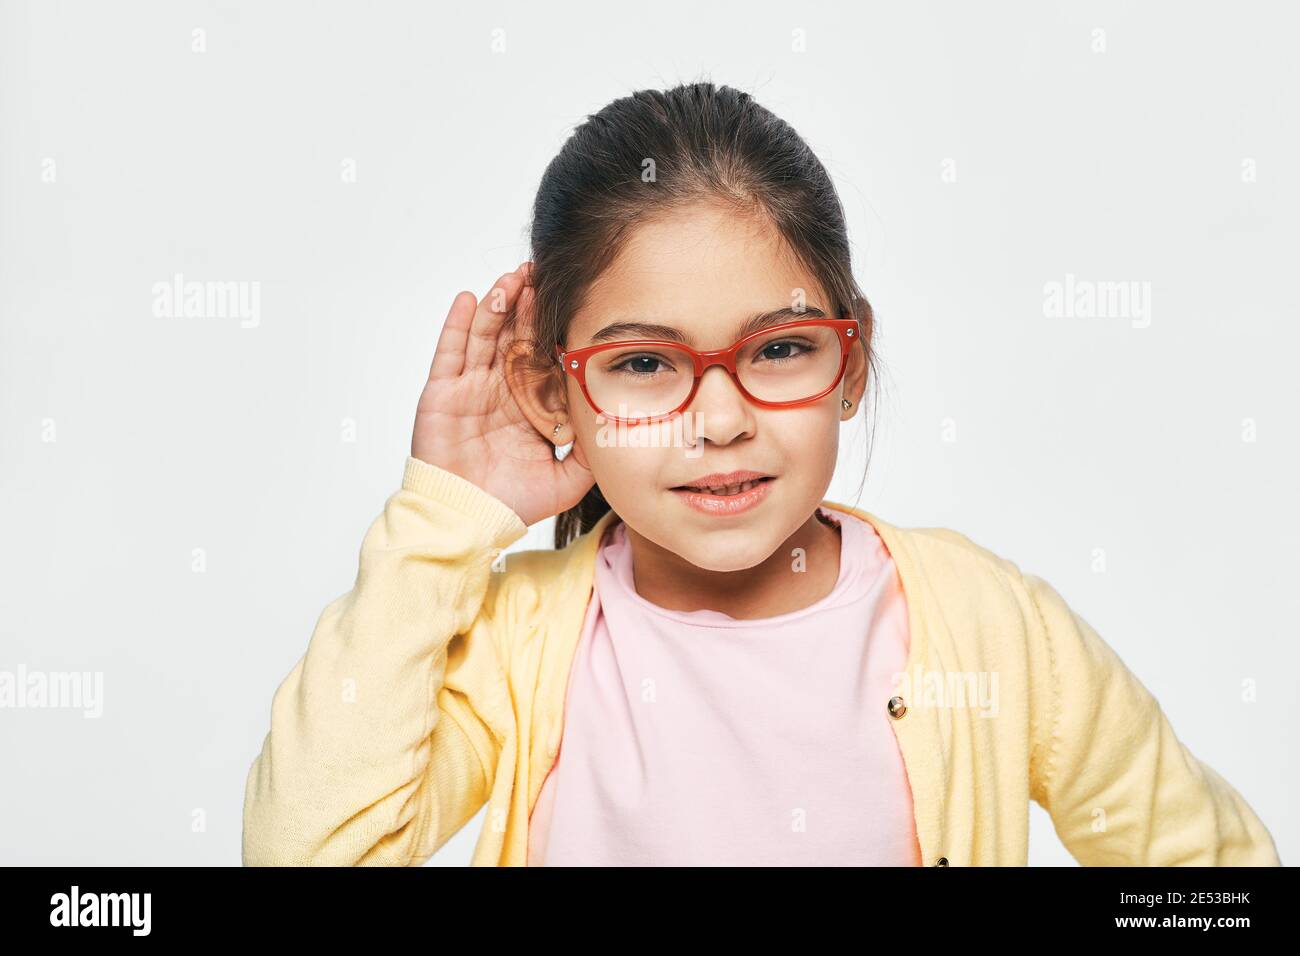 Race mixte petite fille tient la main près de son oreille pour écouter, isolé sur fond blanc. Concept de test auditif pour enfants Banque D'Images